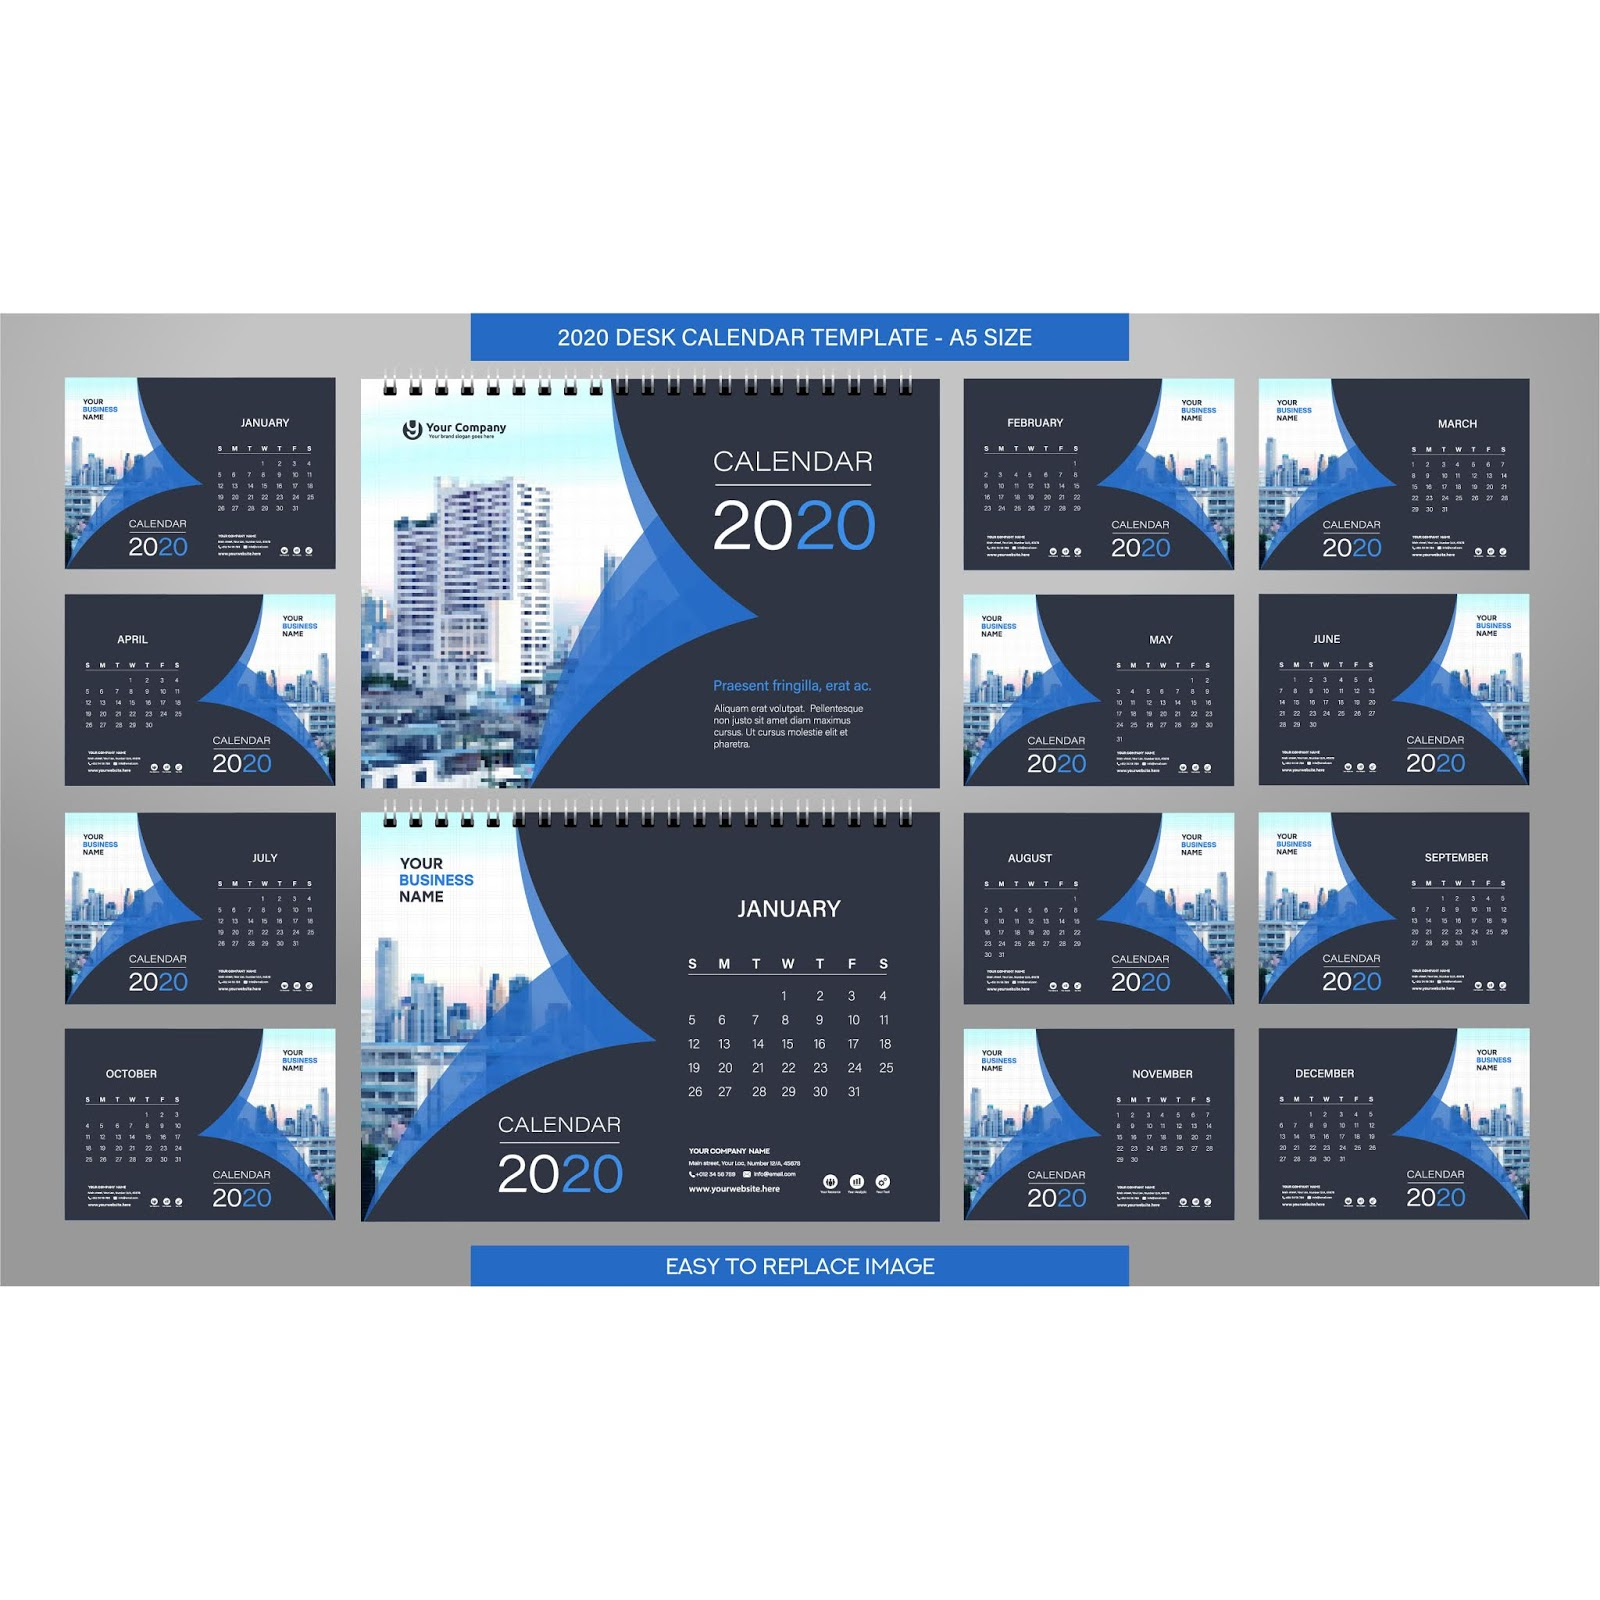 2020 Desk Calendar Template Download A 2020 Calendar Free